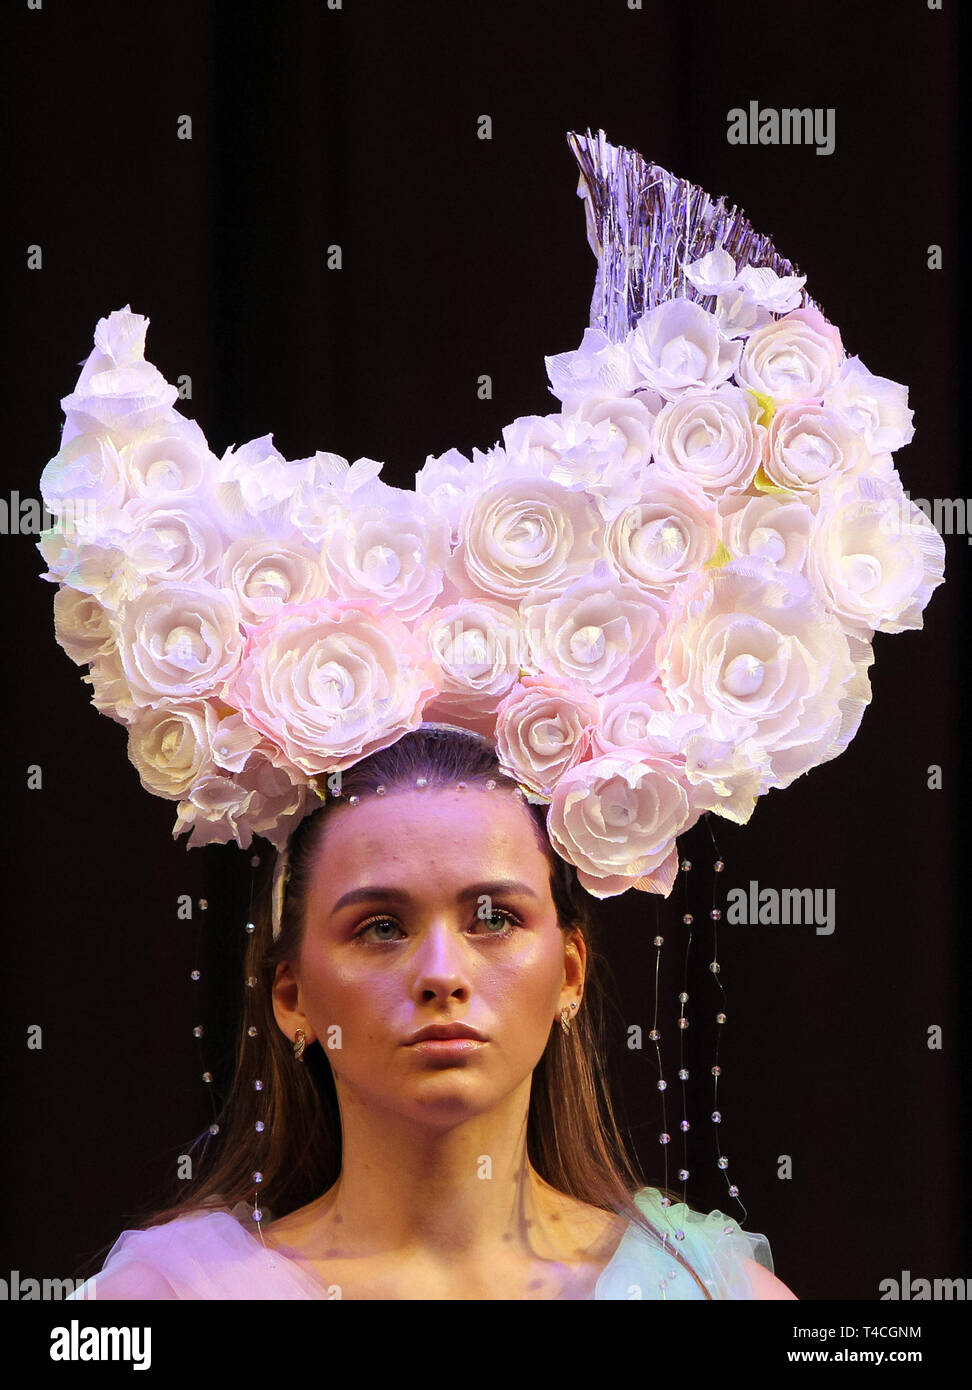 April 15, 2019 - Kiew, Ukraine - ein Modell stellt im Rahmen des jährlichen Internationalen Festivals von Friseur, Mode und Design'' Crystal Angel'' in Kiew, Ukraine, am 15. April 2019. Die Friseur-und Make-up-Künstler nahmen die jährlichen Friseure Wettbewerb vom 14. bis 15. April. (Bild: © SERG Glovny/ZUMA Draht) Stockfoto